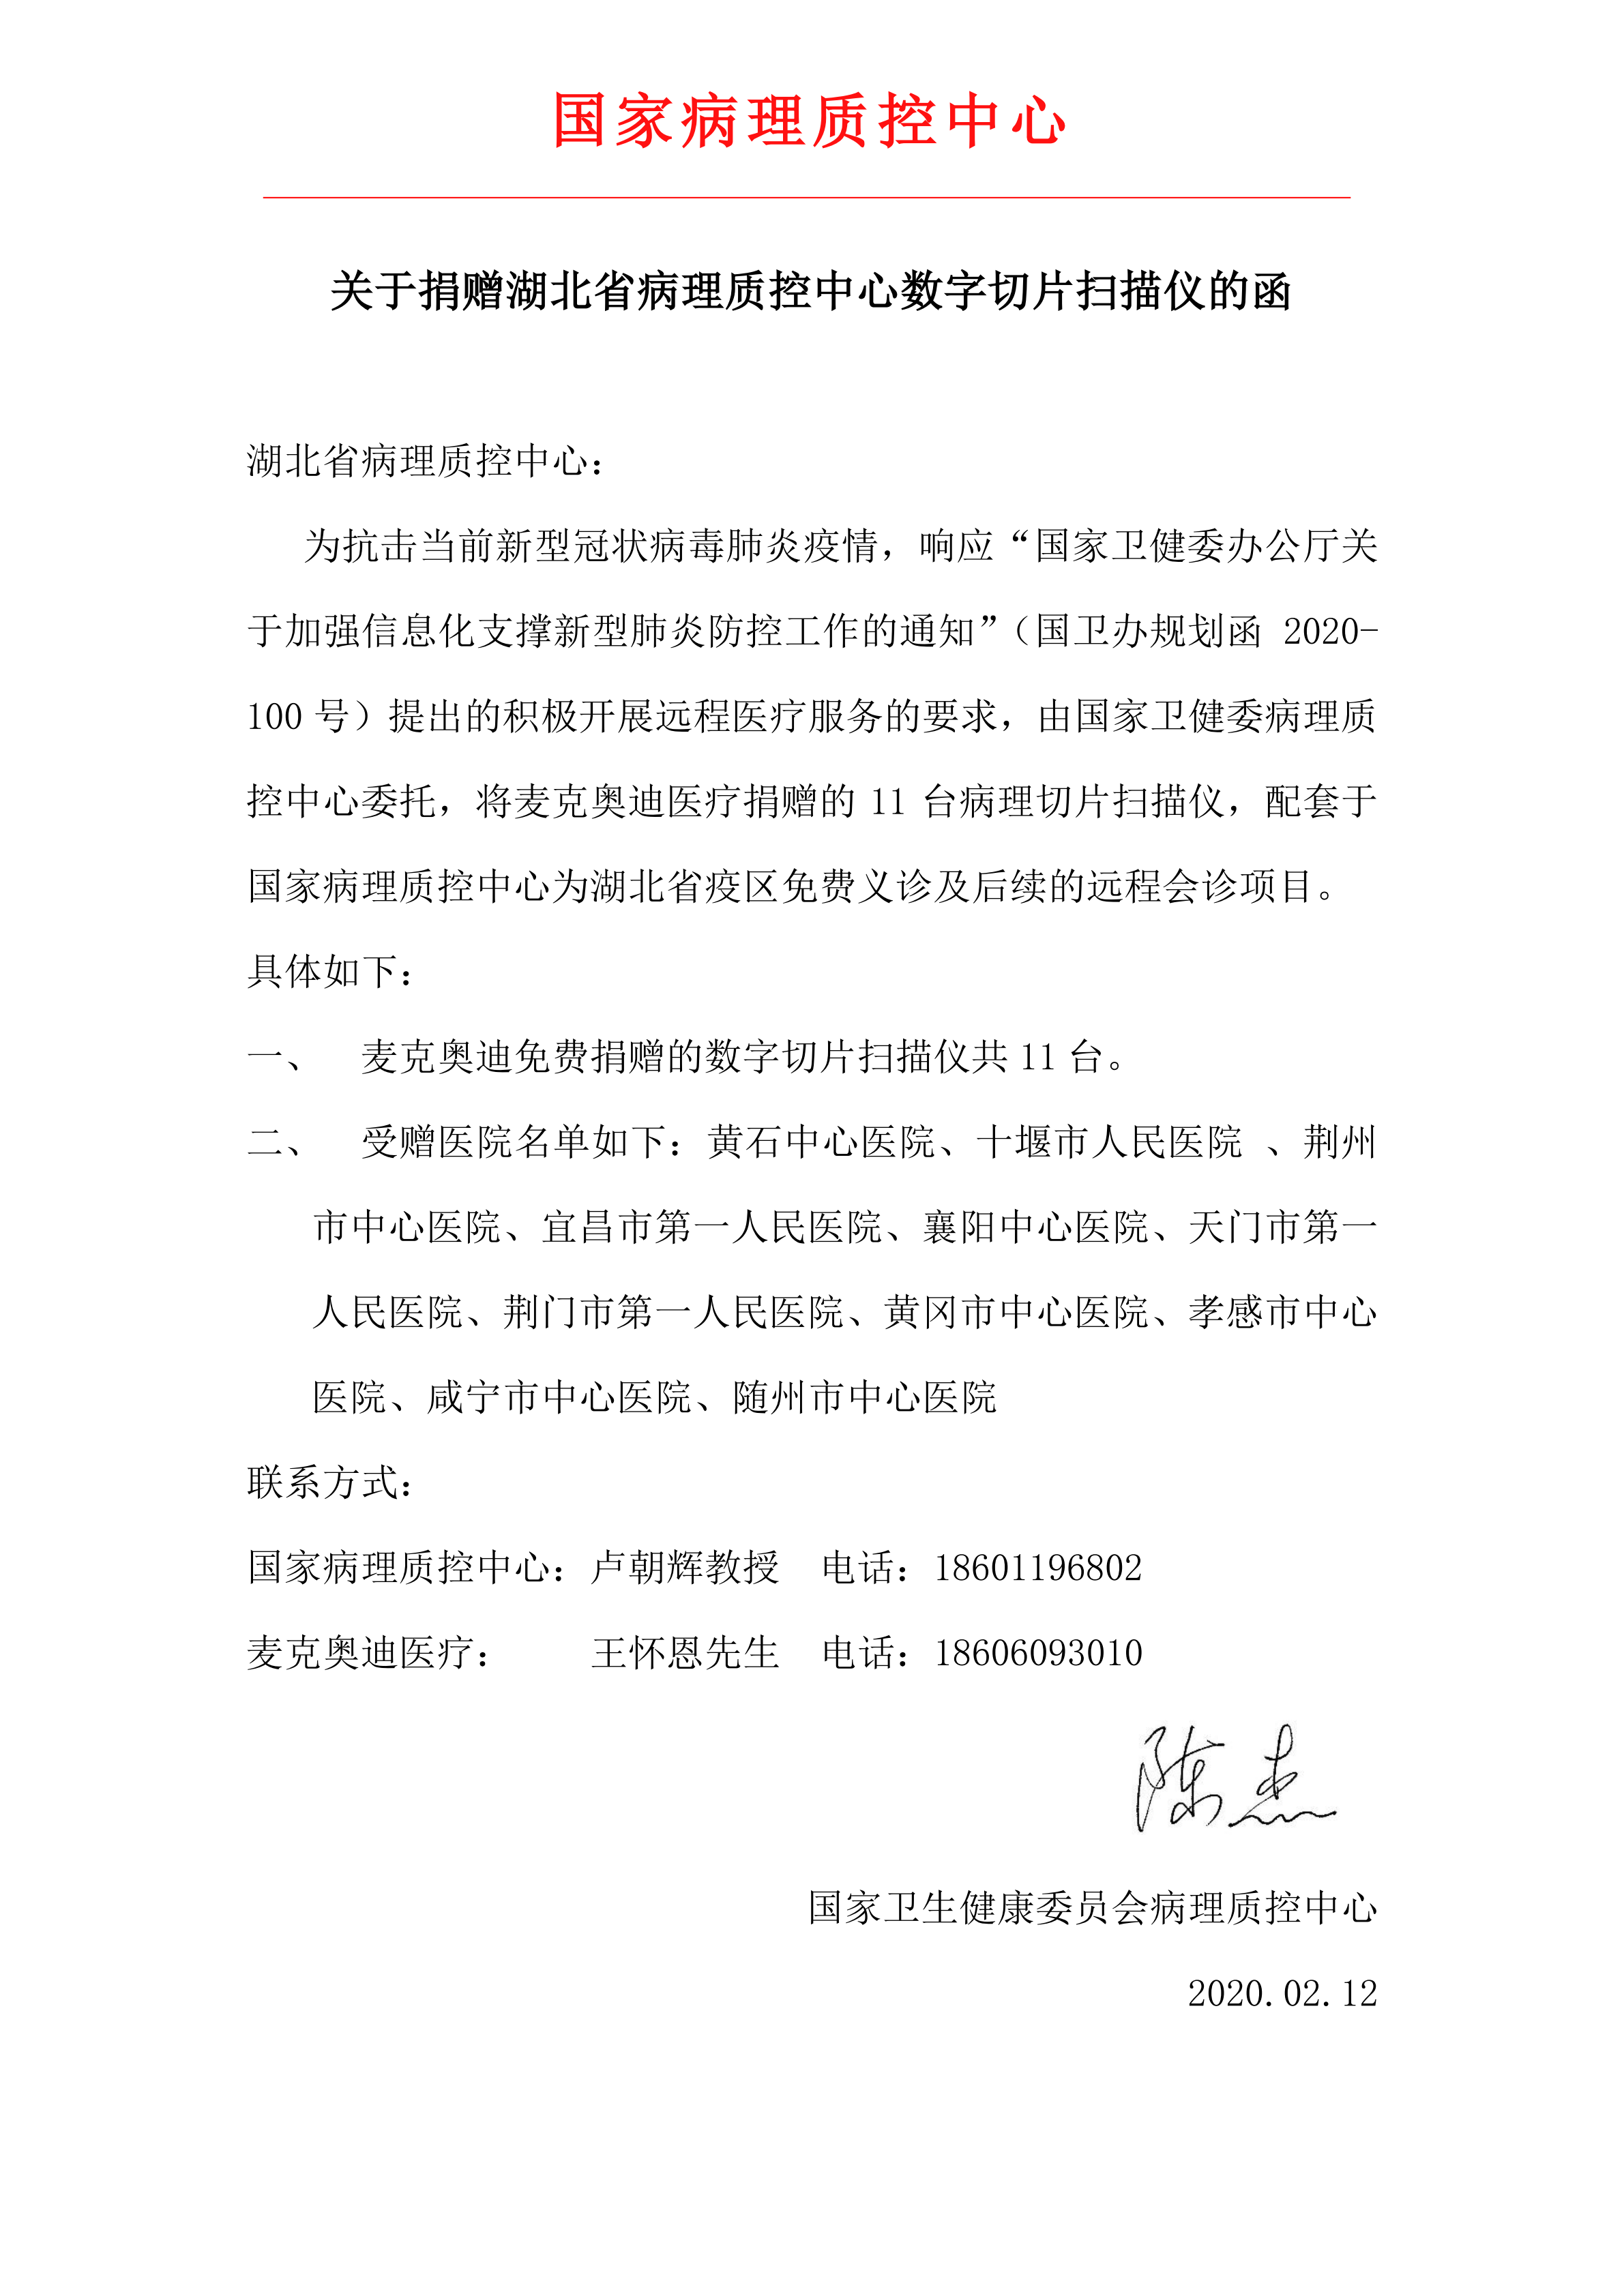 质控平台关于支援湖北省新冠病毒疫区的捐赠函-final_00.png